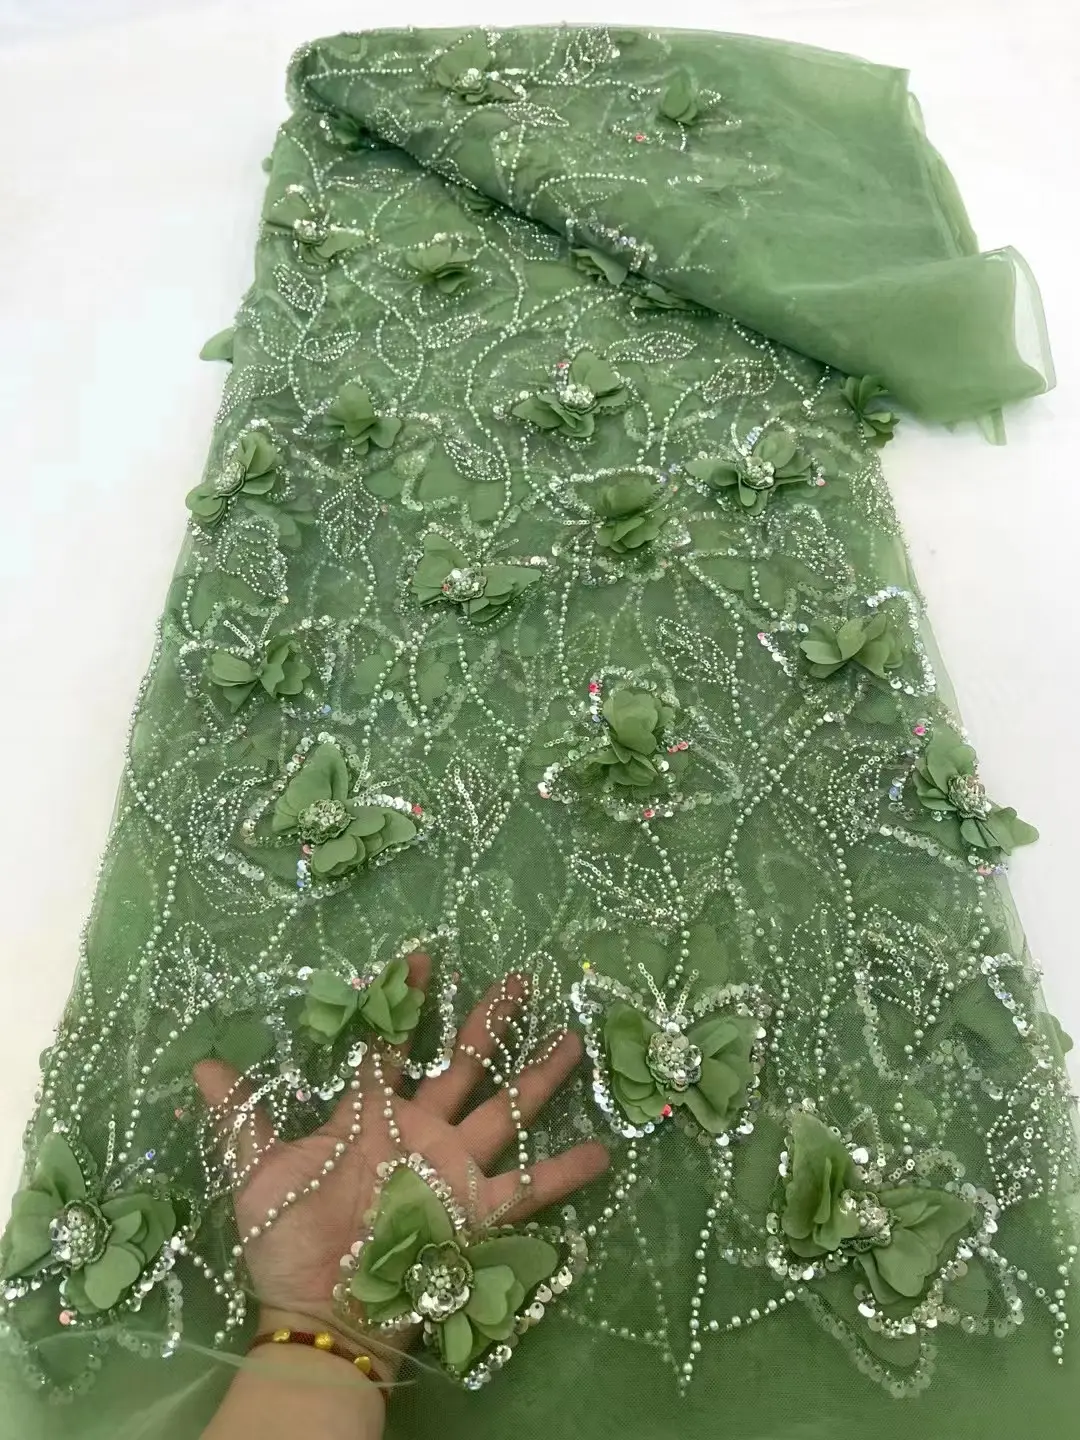 Nouveau tissu de dentelle perlée de luxe prix de gros perles de mariée broderie 3D papillon dentelle français tulle dentelle tissu pour mariage